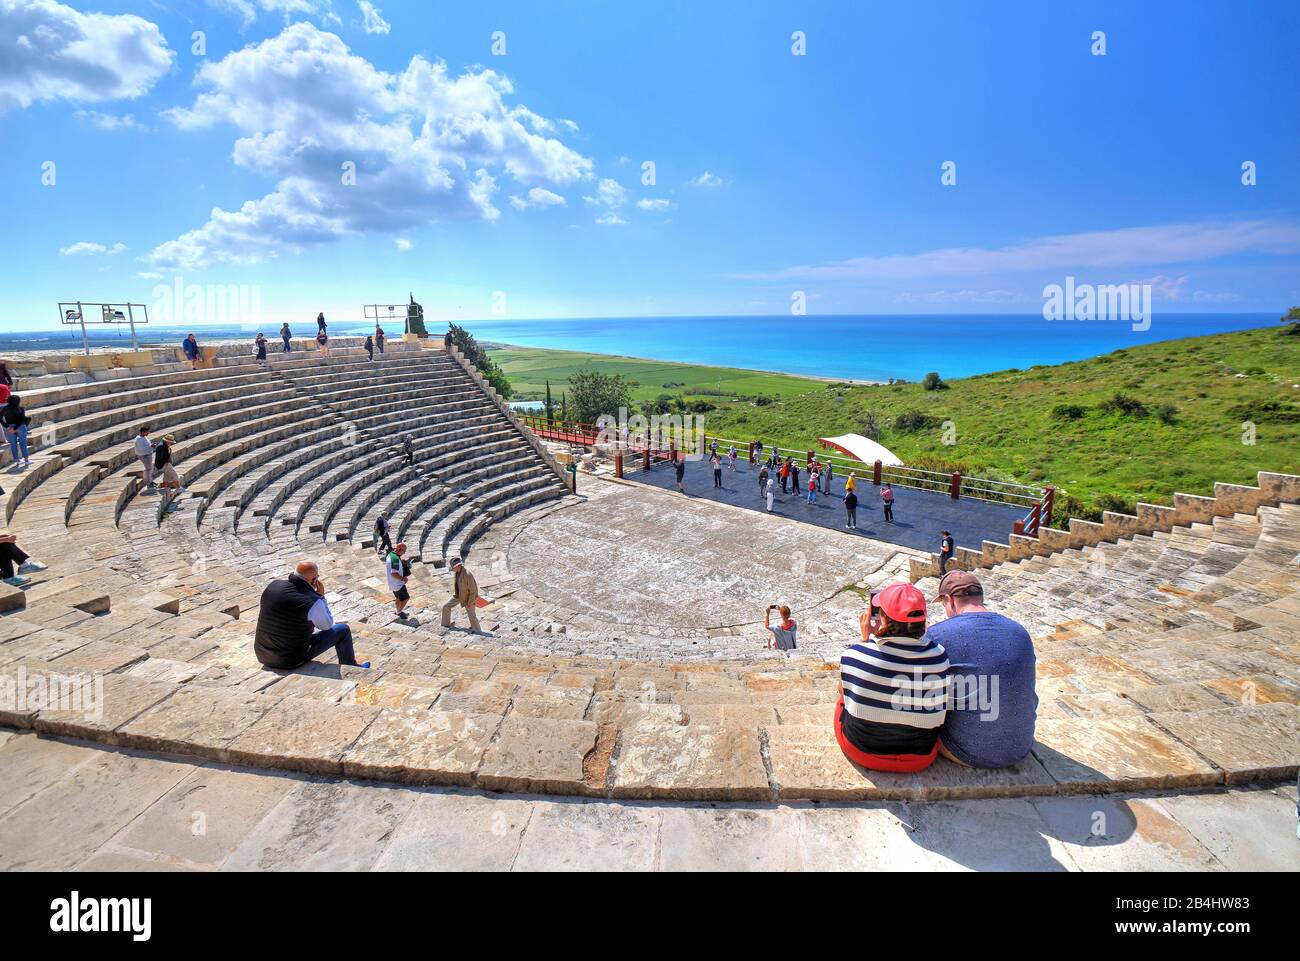 Antico teatro sulla costa mediterranea nell'antico sito archeologico di Kourion vicino a Limassol, costa mediterranea, Cipro Foto Stock